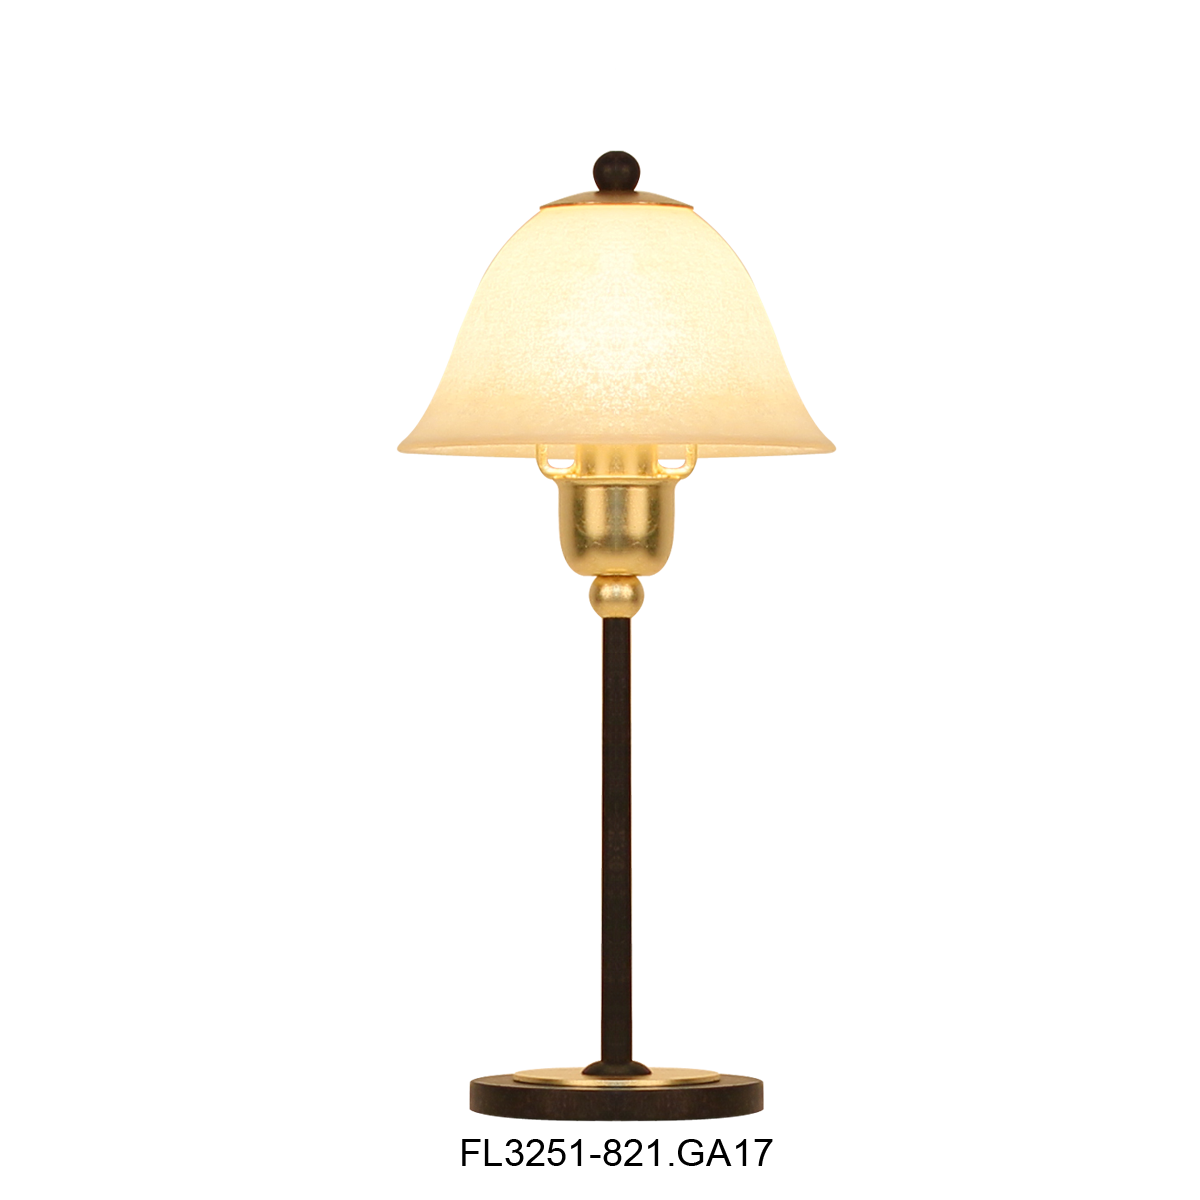 Flair klassische Tischlampe 25 mit Leuchtenglas nach Wahl perfekt für die Fensterbank im Landhaus